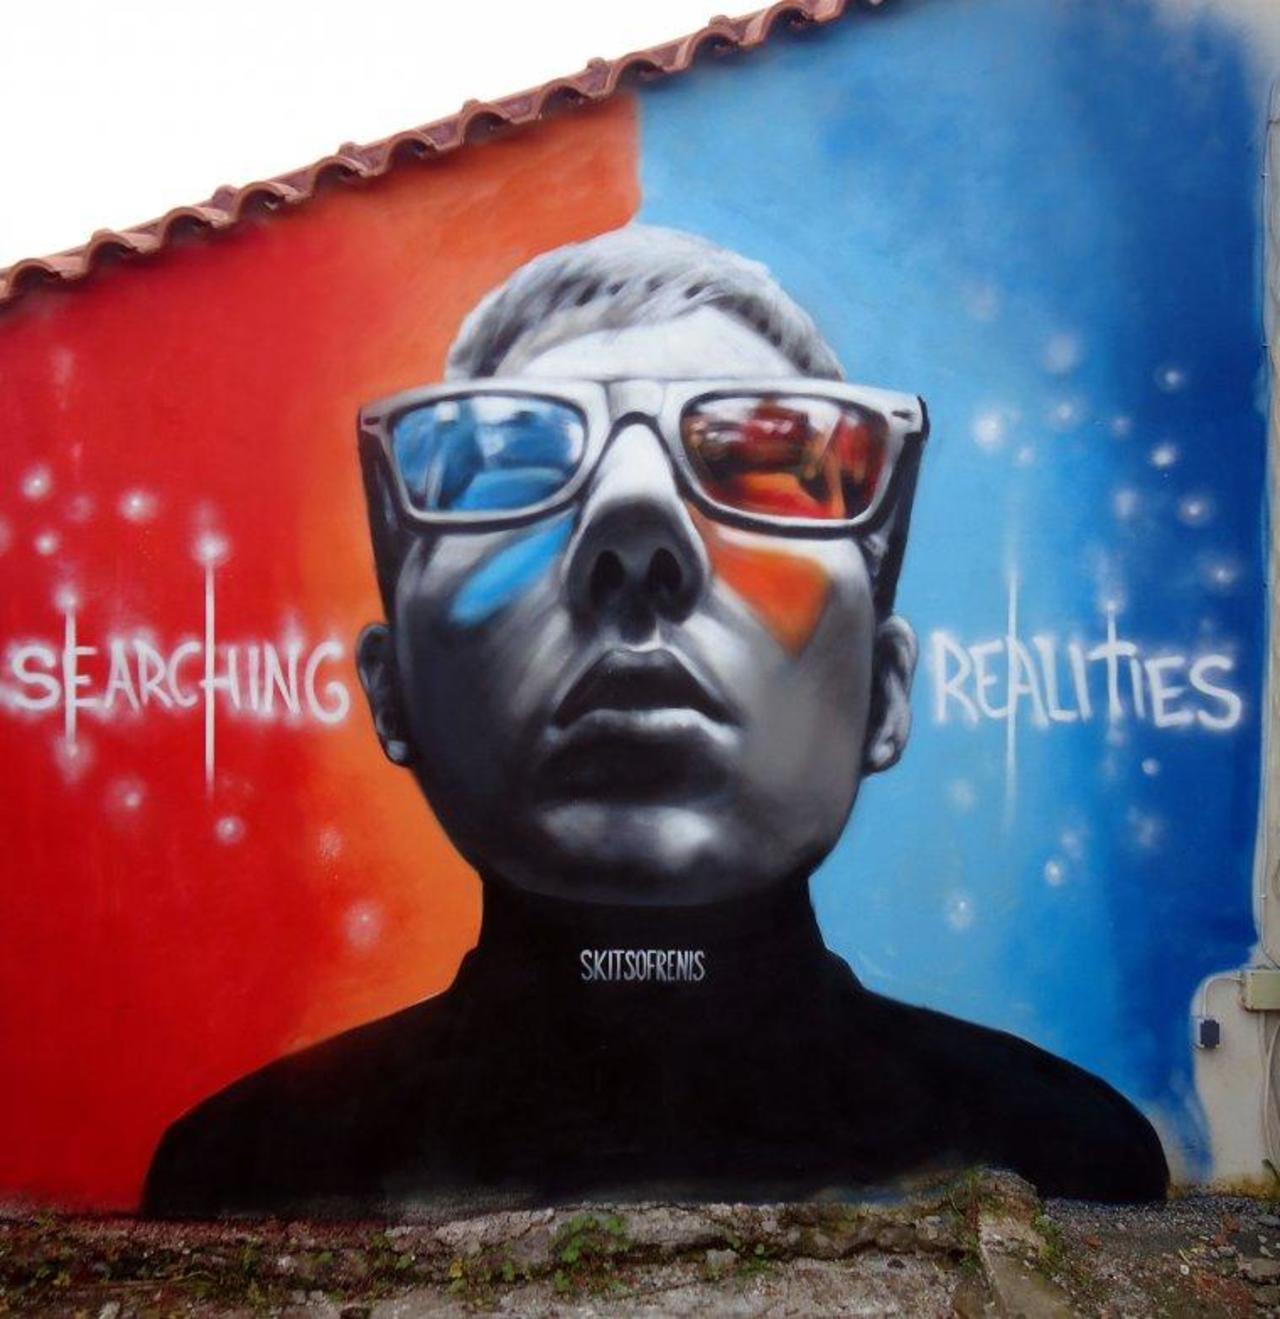 #Graffiti of the Day by SKITSOFRENIS
#StreetArt http://t.co/Ig7vhz6YYg